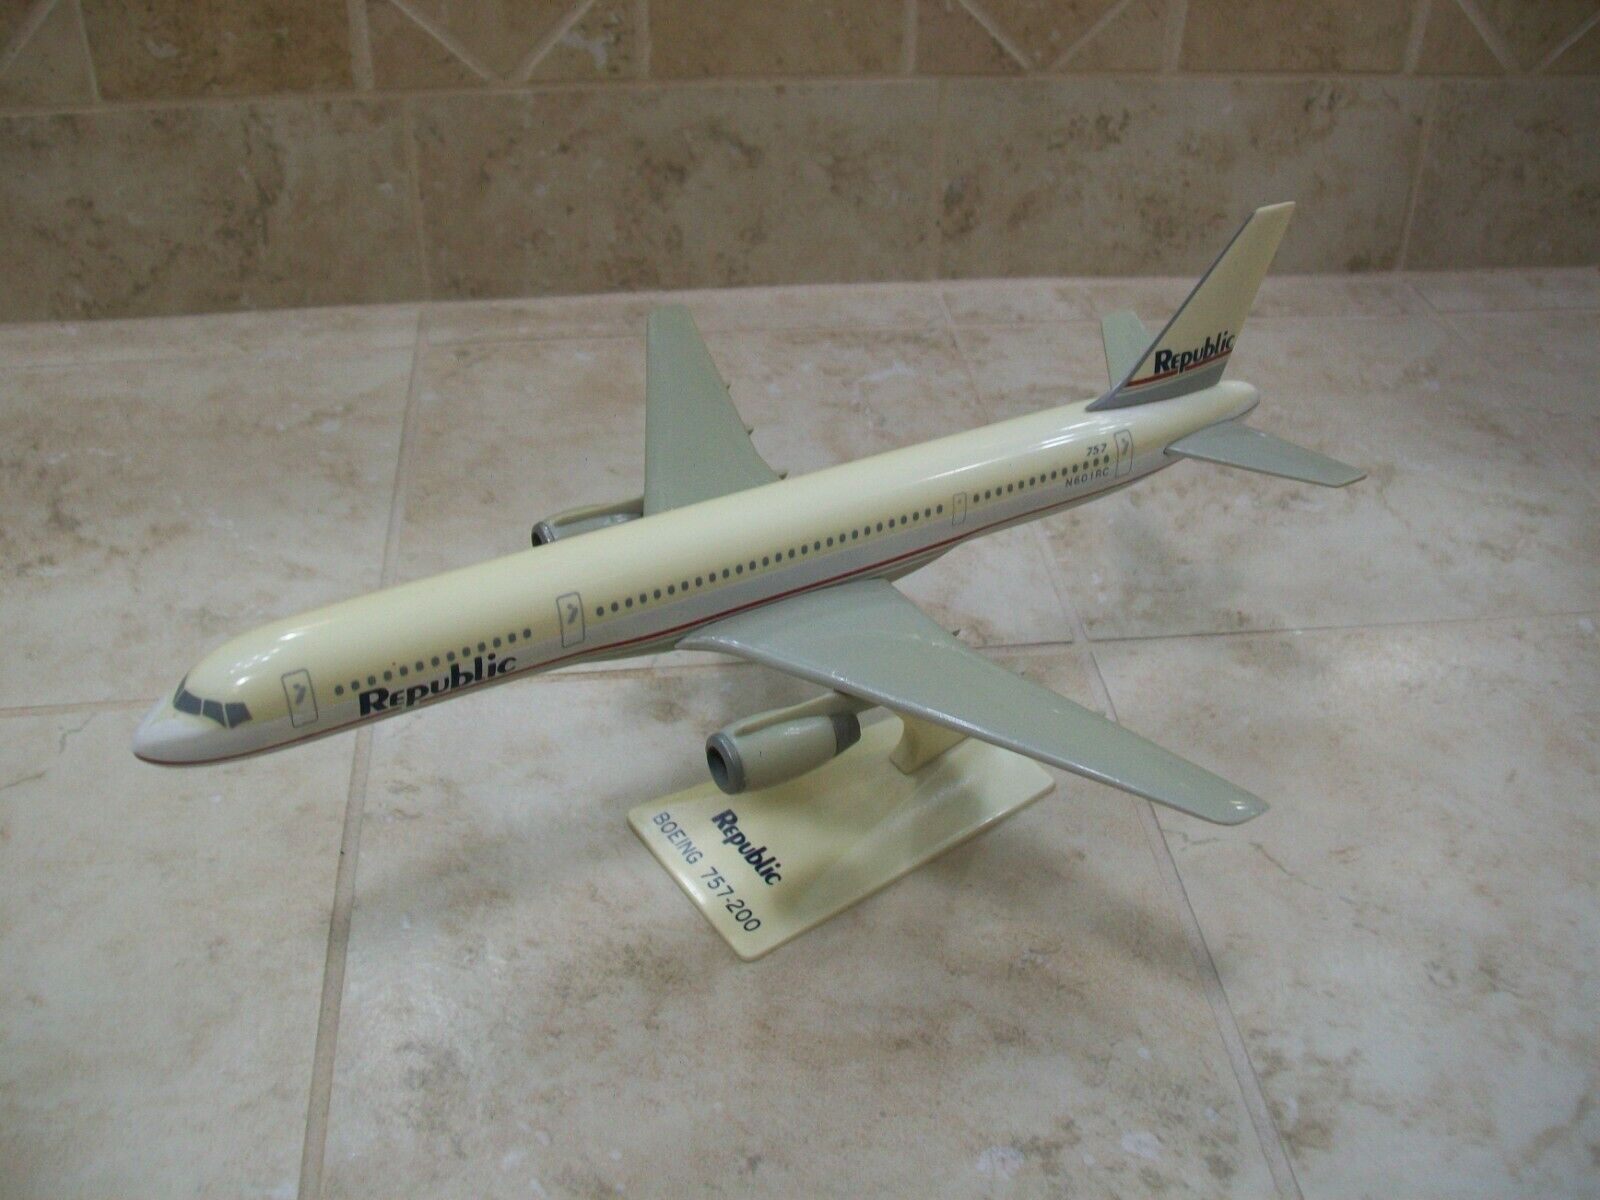 Flight Miniatures Republic 757-200 model 1/200